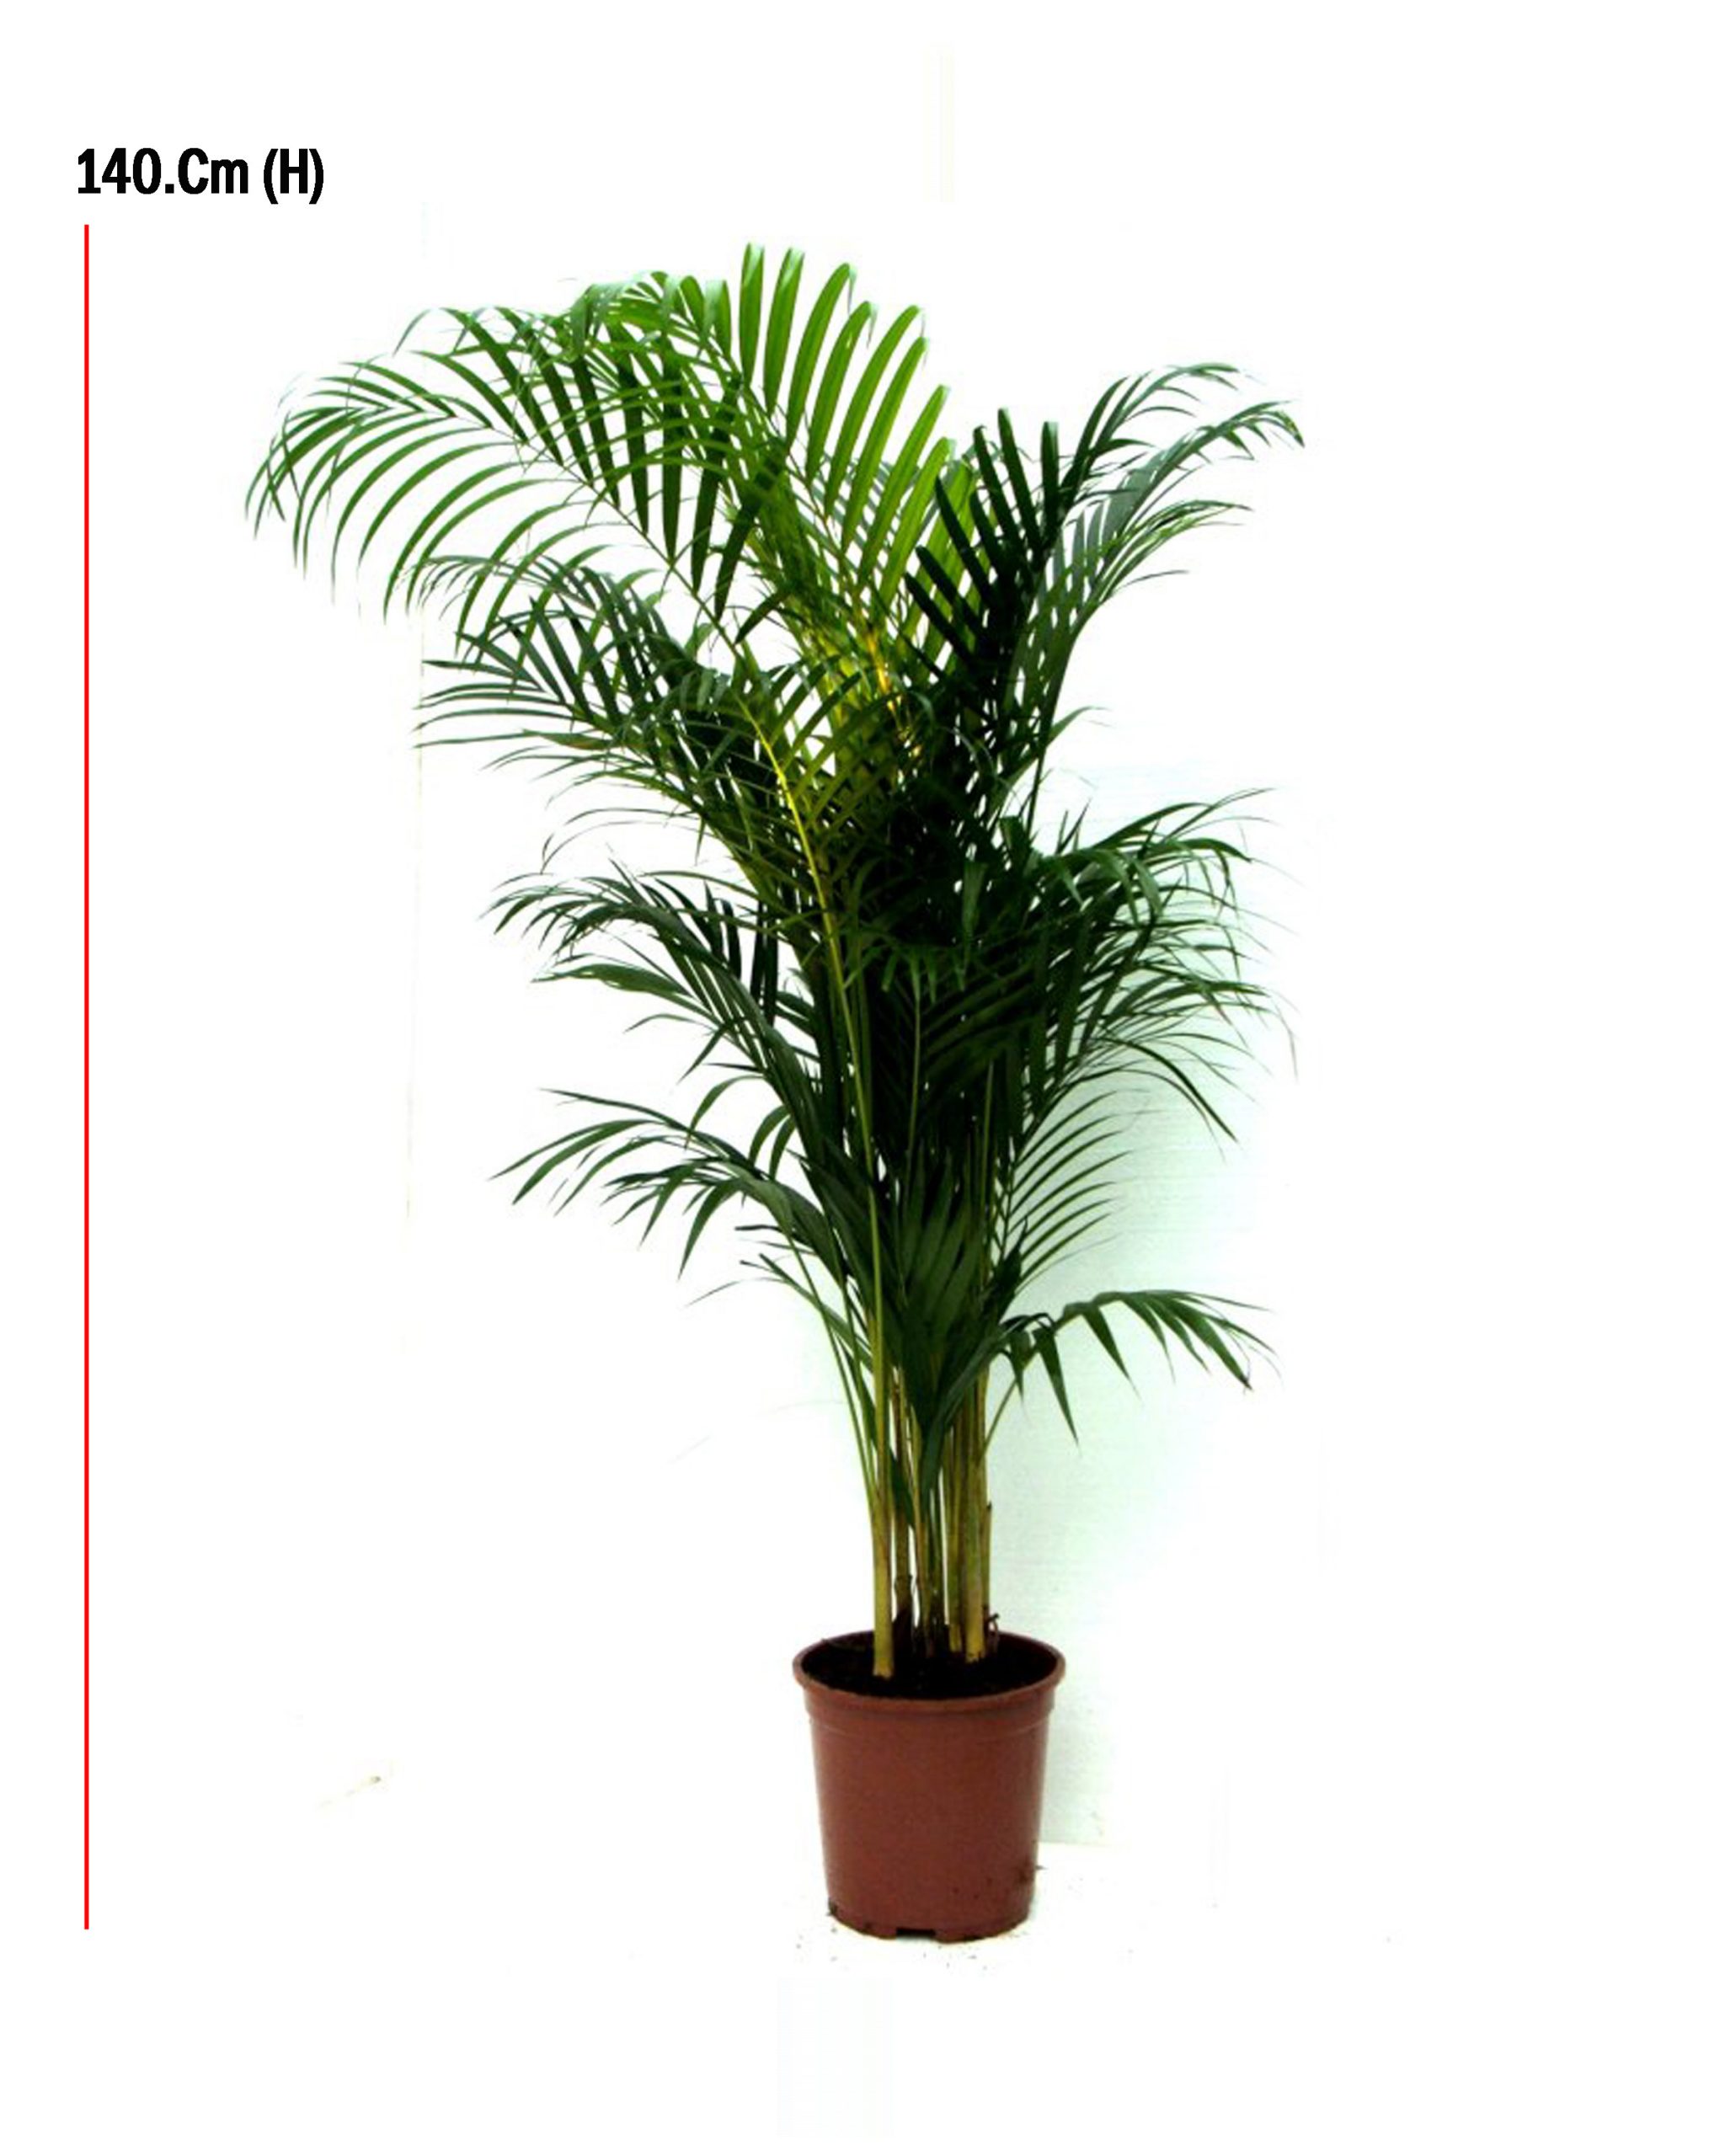 Arecca Palm – Size:100Cm